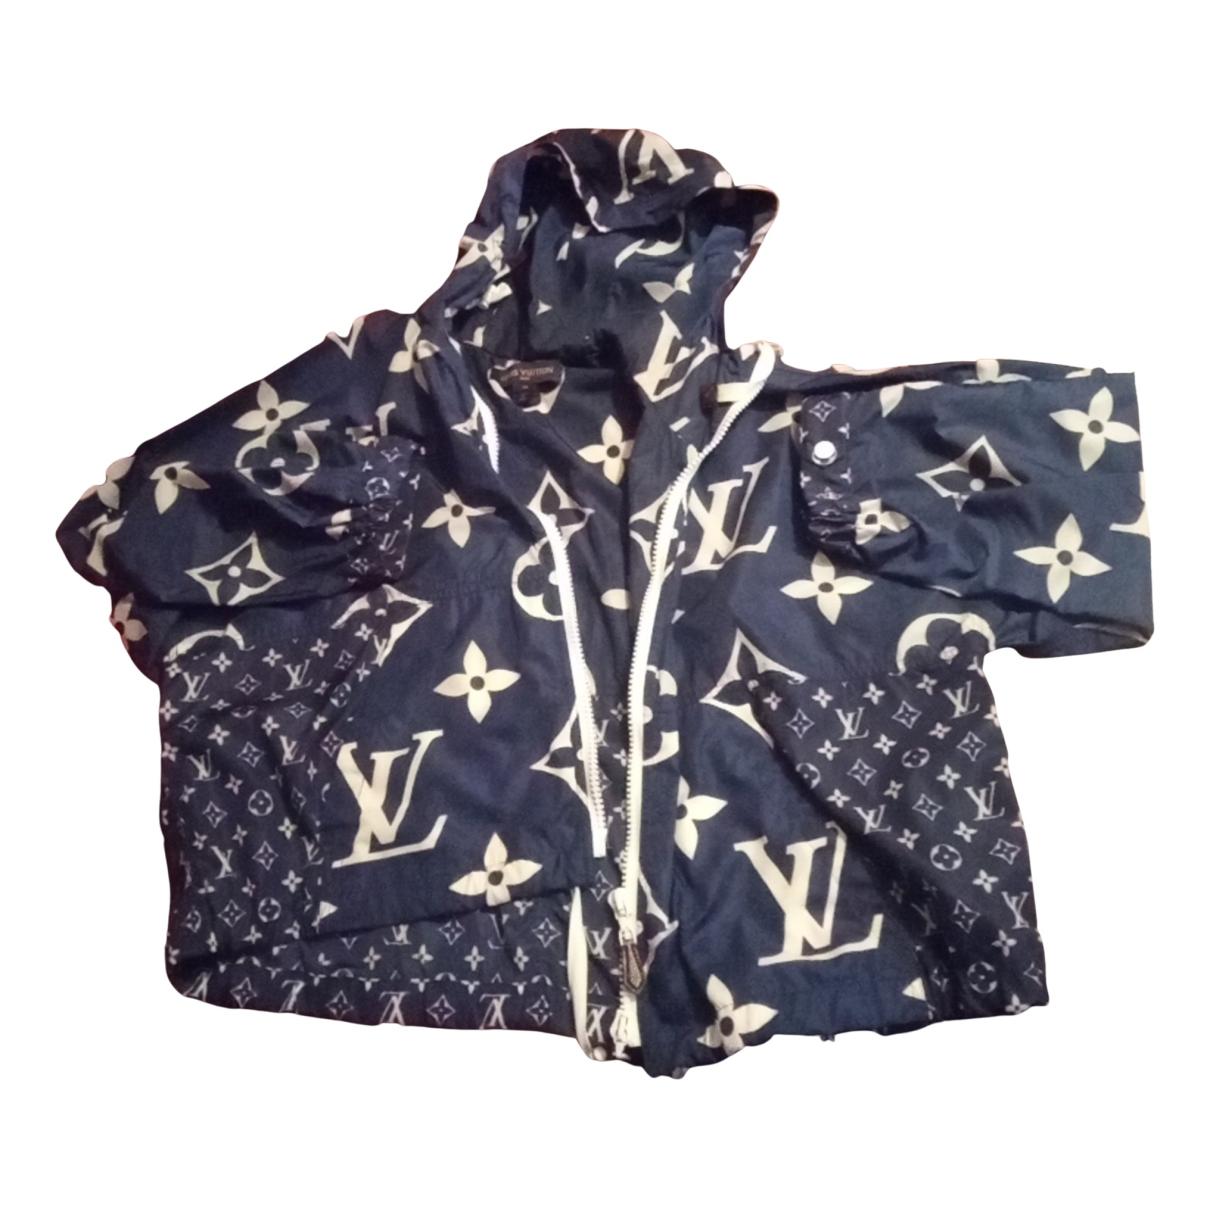 Louis Vuitton Size 38 (US 4) Jacket